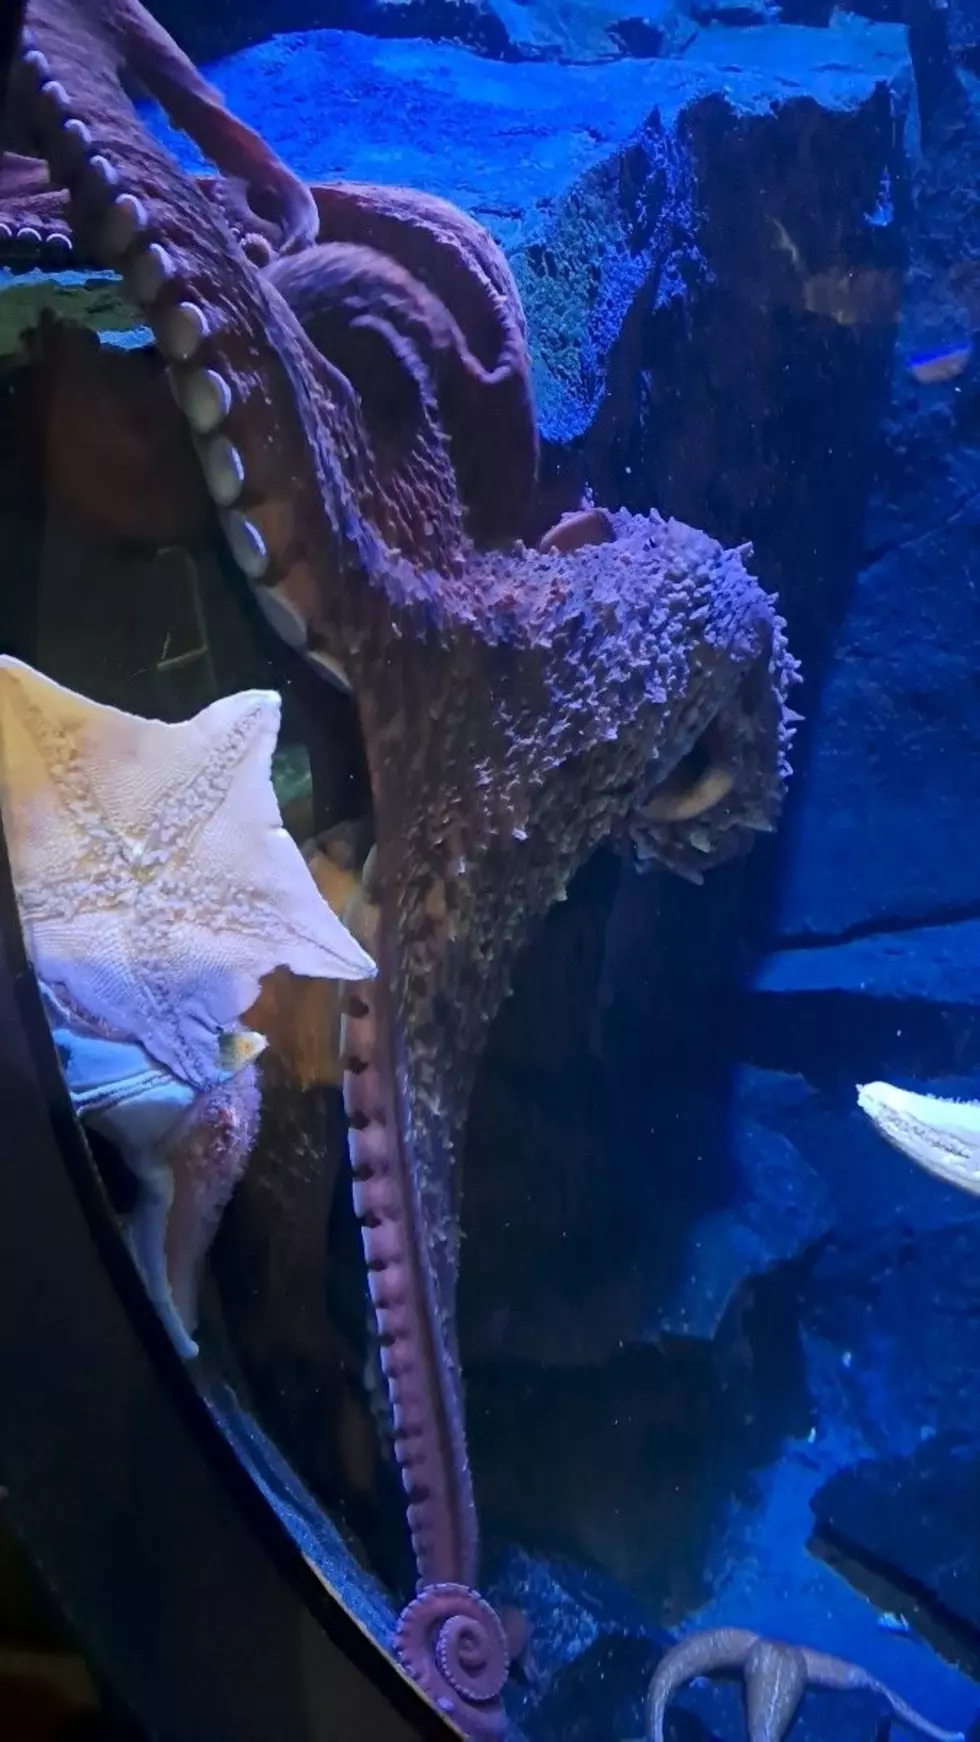 Charlie the Octopus Is New at Adventure Aquarium Camden, NJ